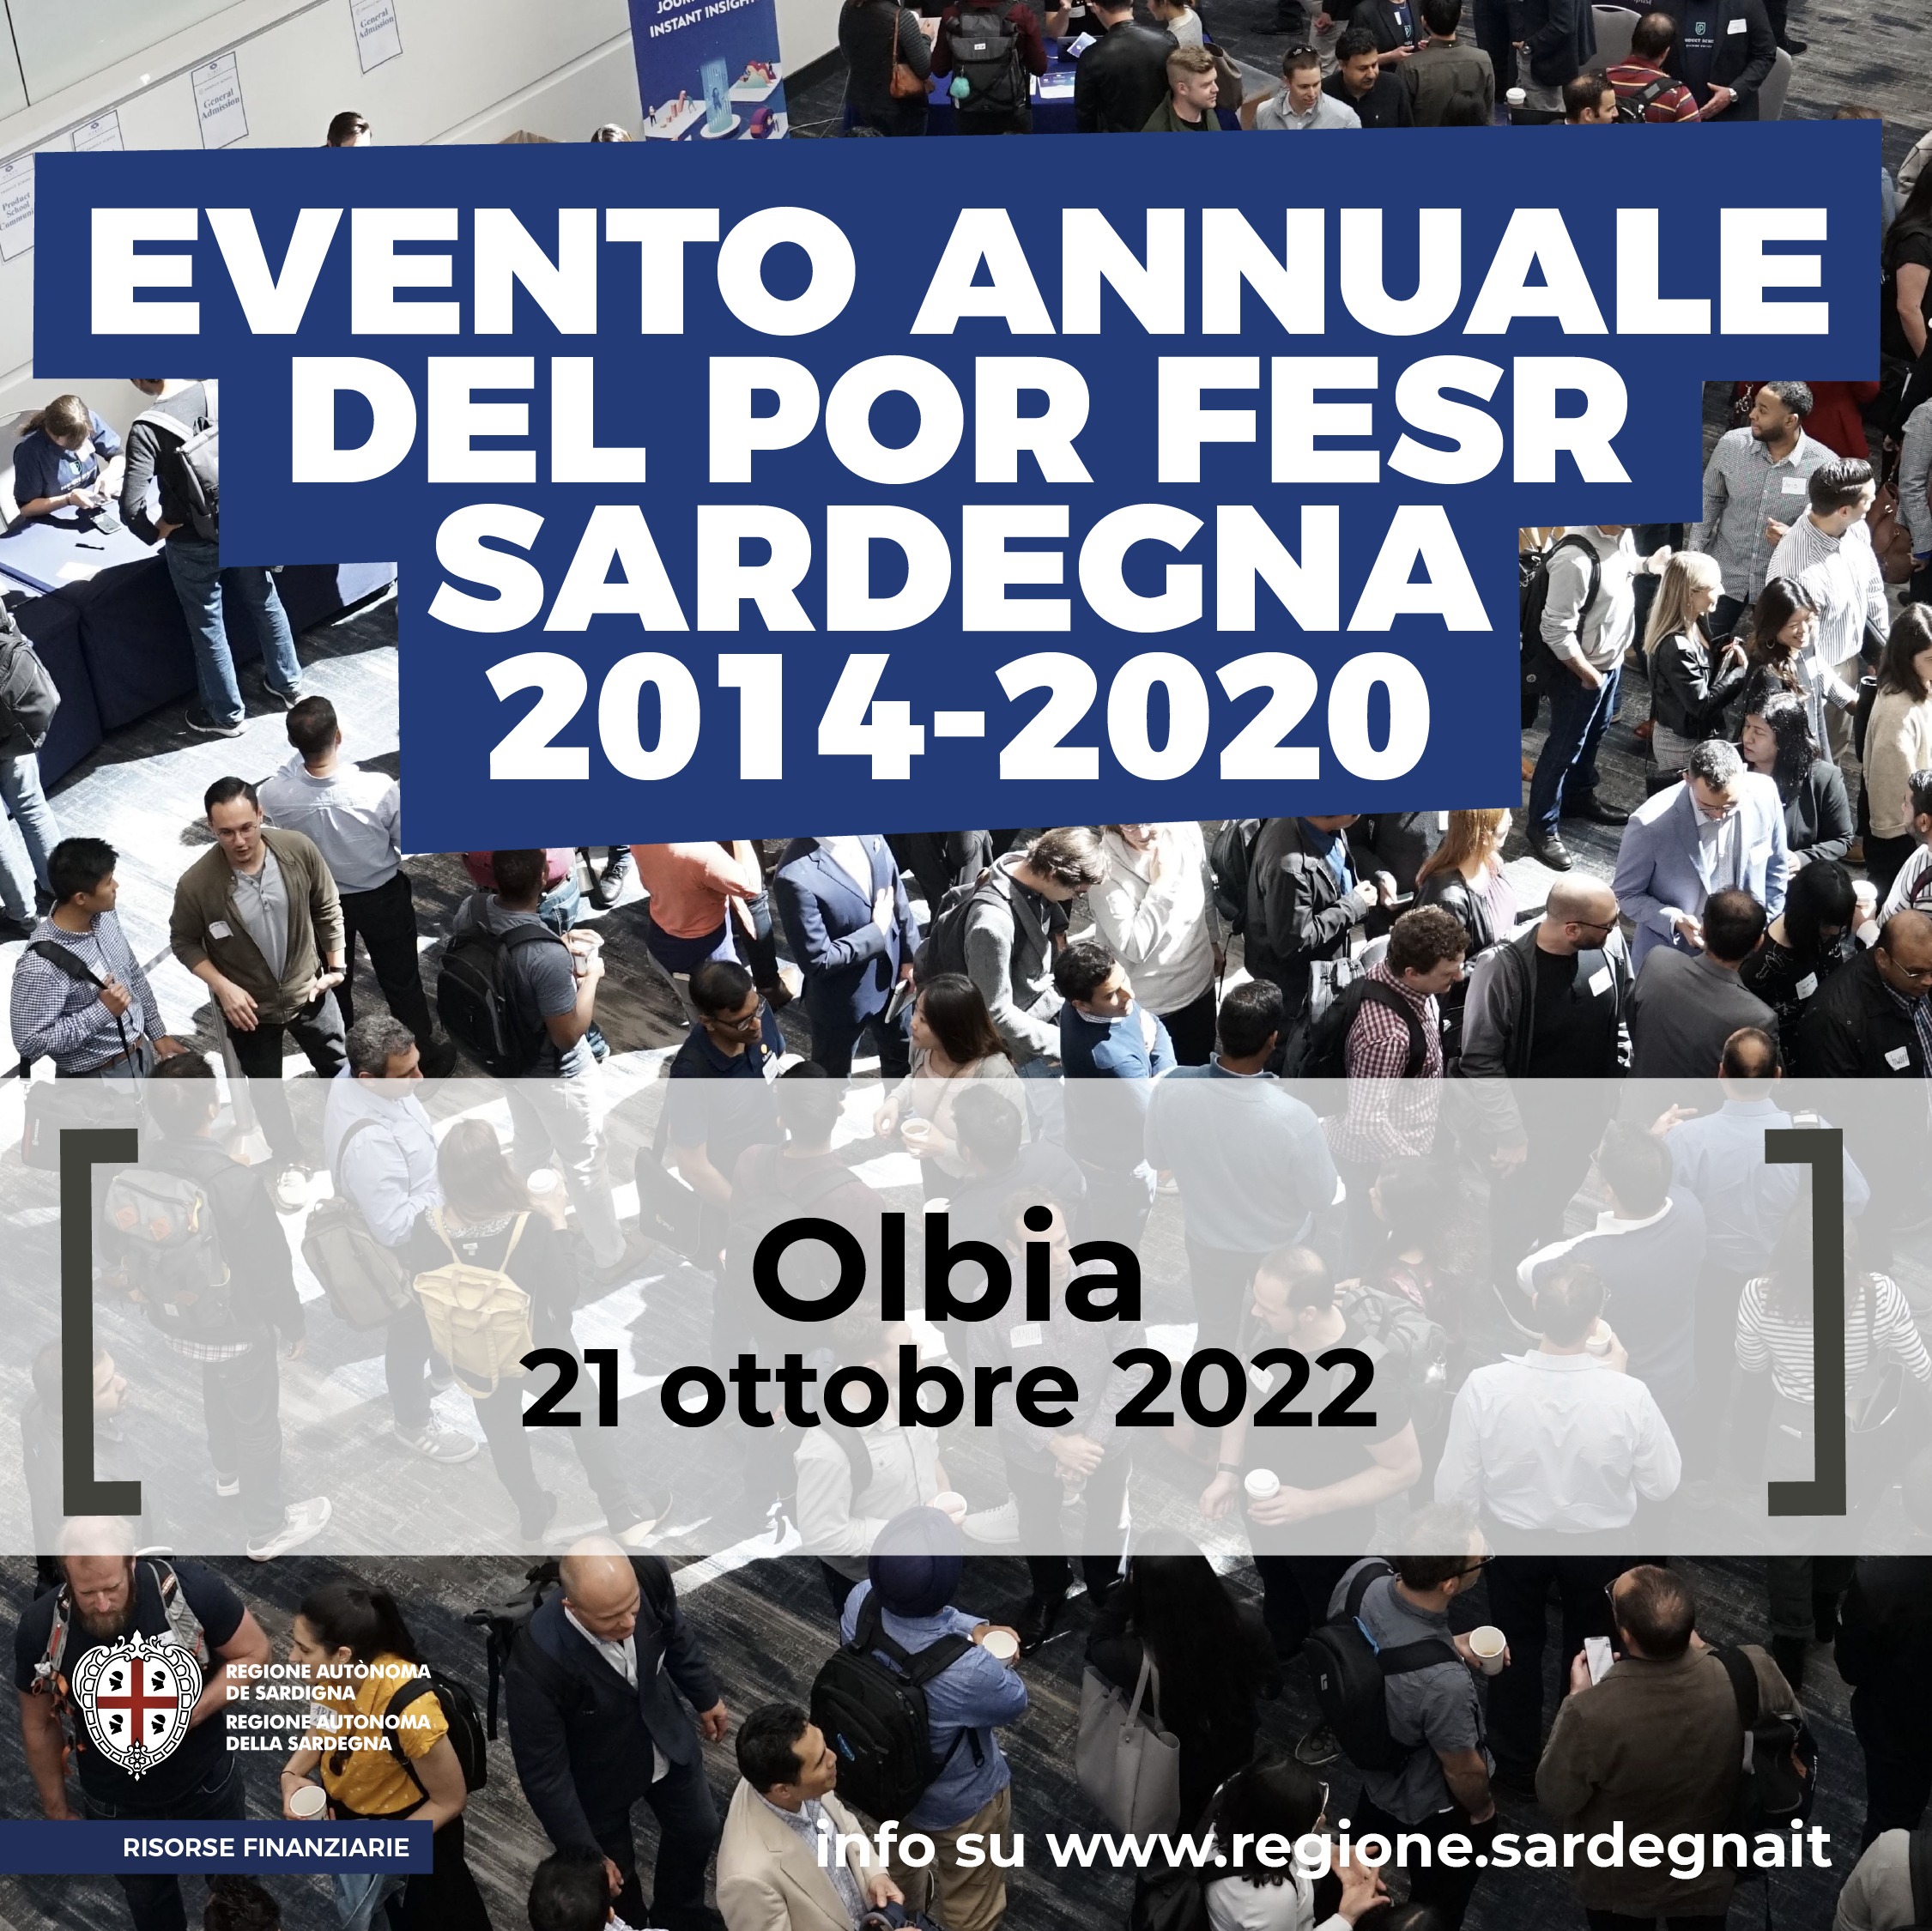 POR FESR Sardegna 2014-2020 - Evento annuale a Olbia